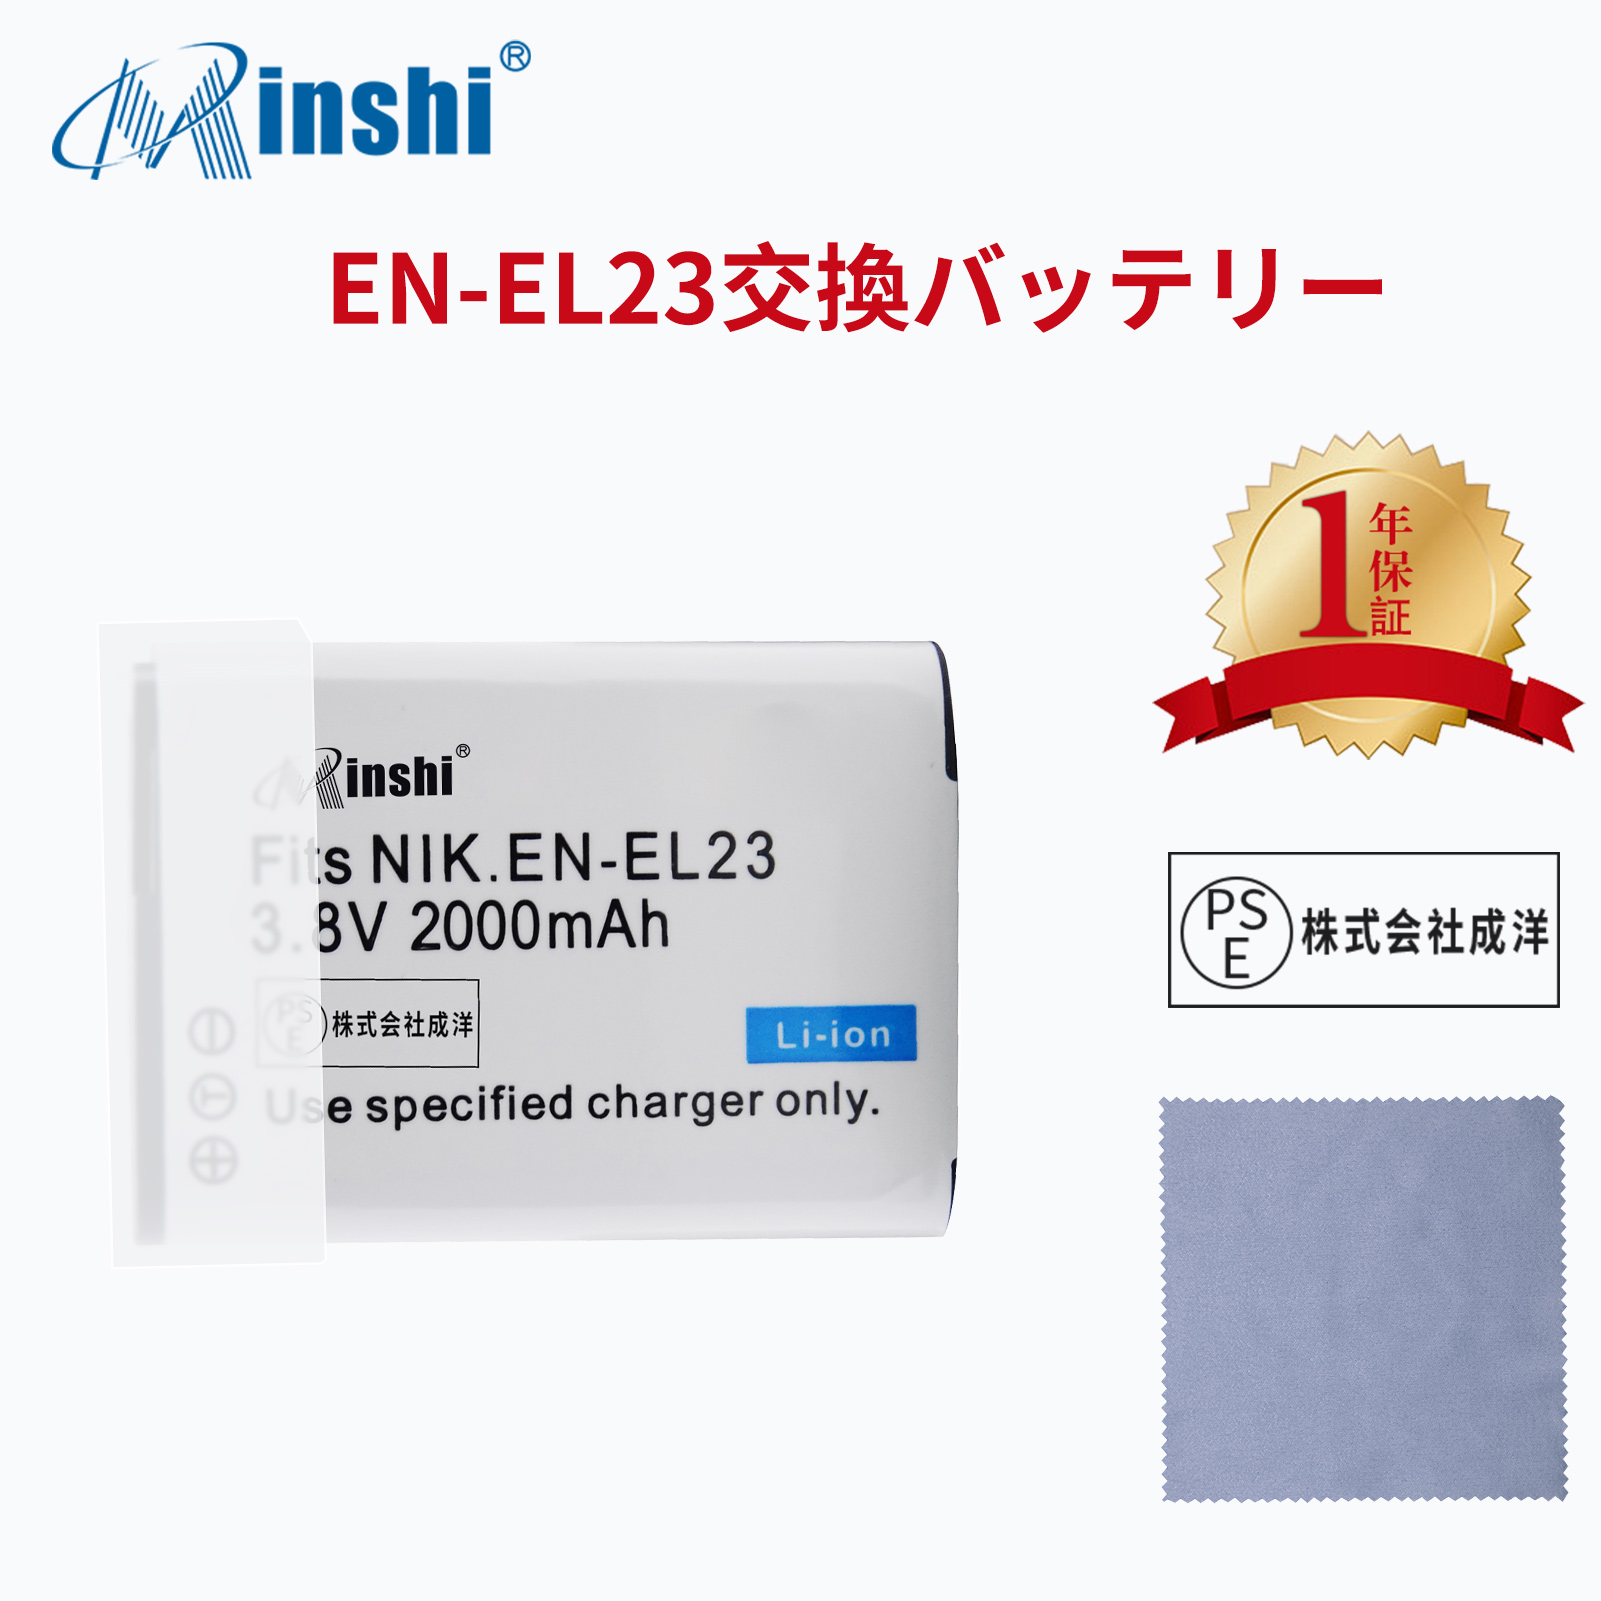 【清潔布ー付】minshi NIKON  B700  対応  互換バッテリー 2000mAh PSE認定済 高品質 EN-EL23 交換用バッテリー